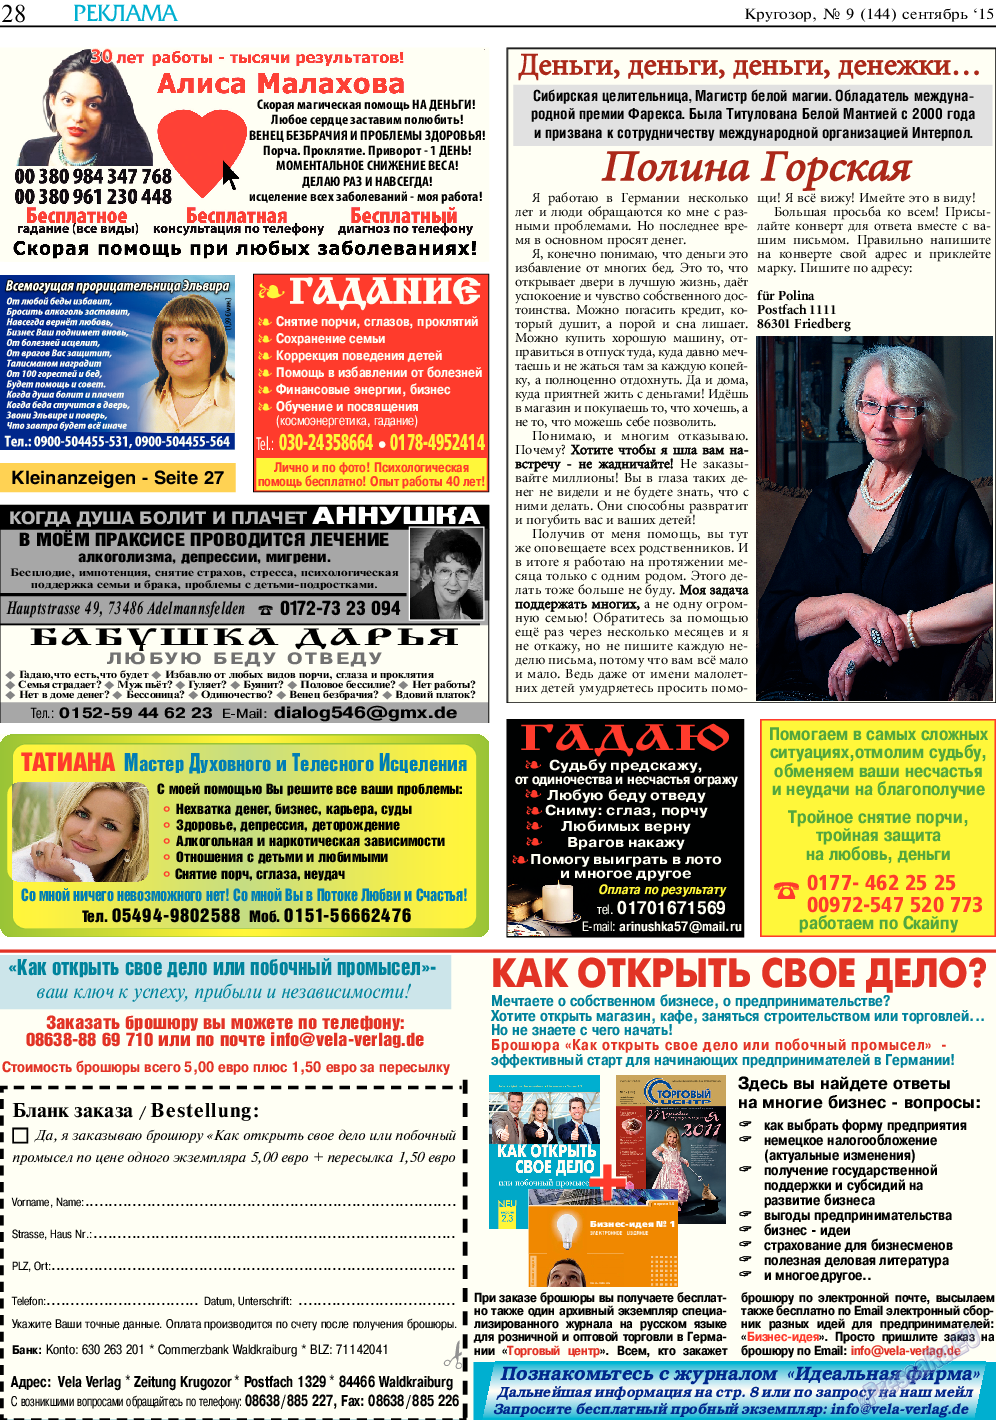 Кругозор, газета. 2015 №9 стр.28